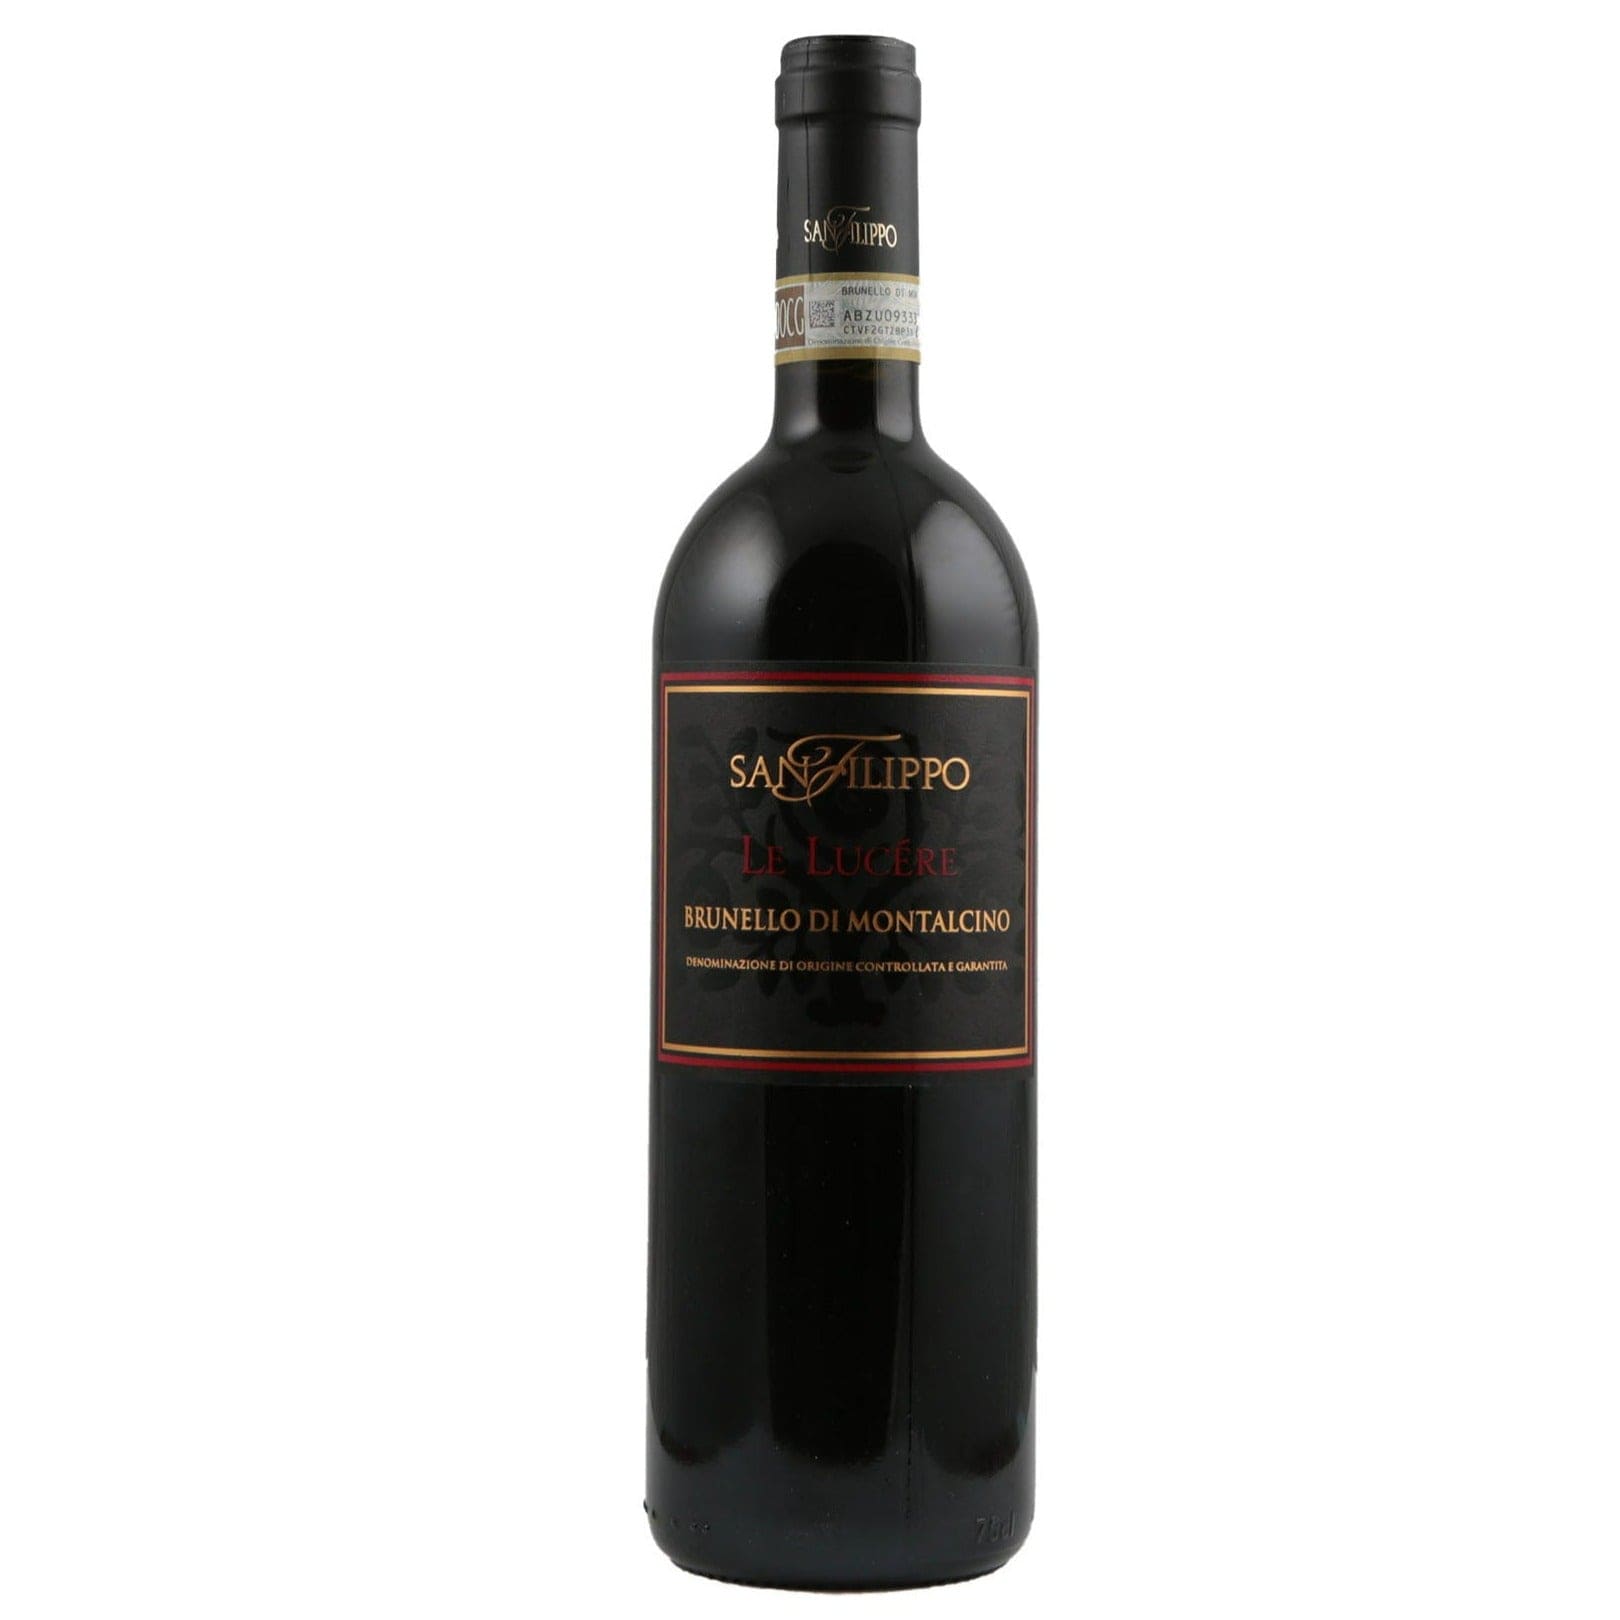 Single bottle of Red wine San Filippo, Le Lucere, Brunello di Montalcino, 2015 100% Sangiovese